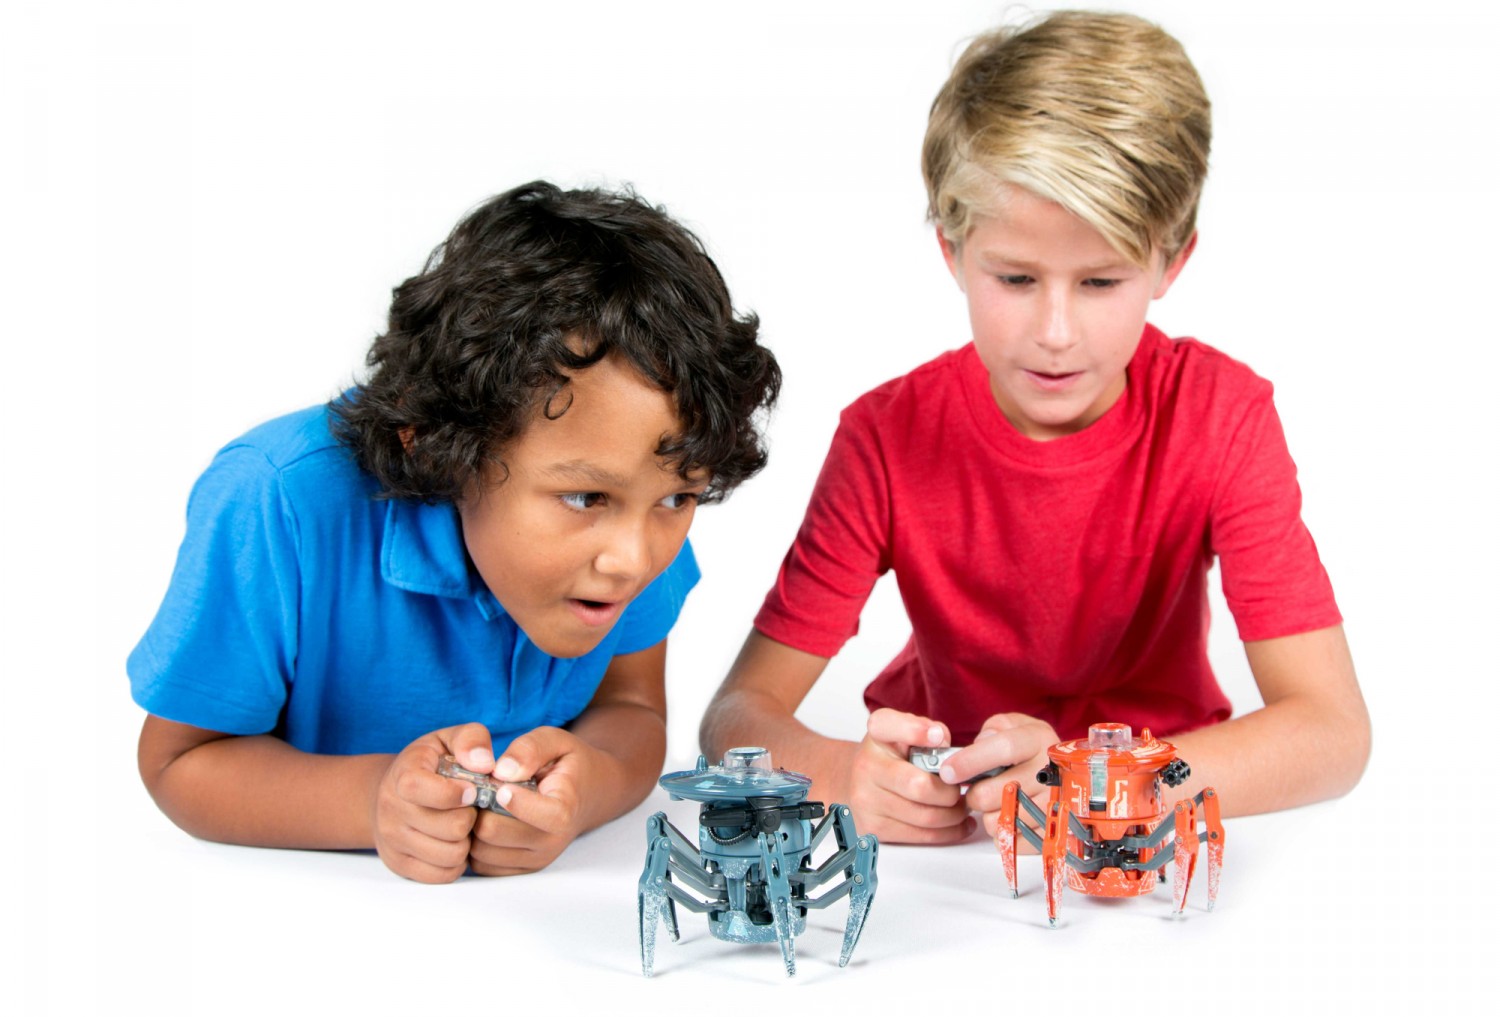 Przedstawiamy robota zabawkę HEXBUG Bojowy pająk 2.0